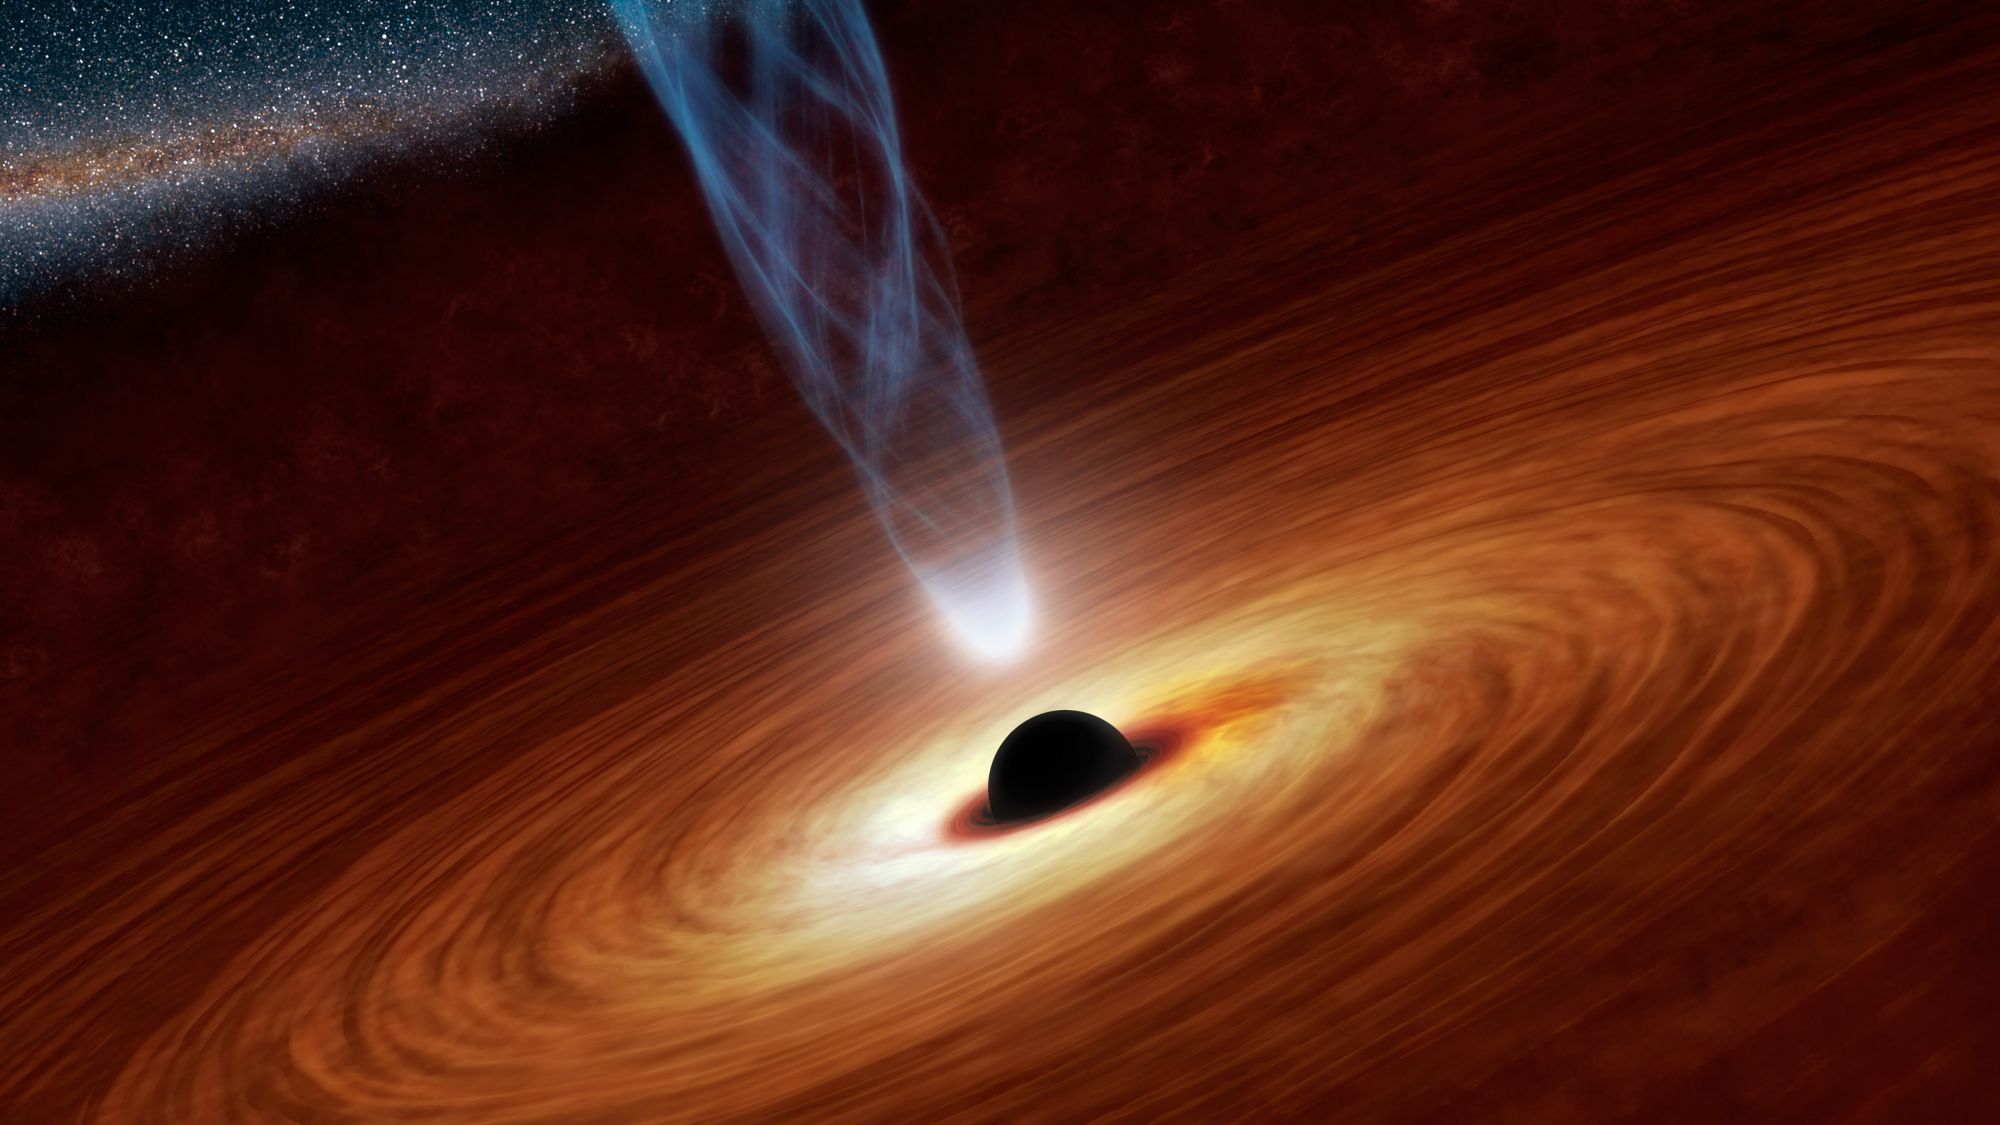 Les trous noirs supermassifs observés ont une particularité étonnante : leurs jets de matière sont alignés… Toute une région de l'univers aurait&nbsp;donc pu&nbsp;être en rotation. Aucune théorie n'avait prédit un tel phénomène. Serait-ce le signe d'une nouvelle physique ? © Nasa, JPL-Caltech